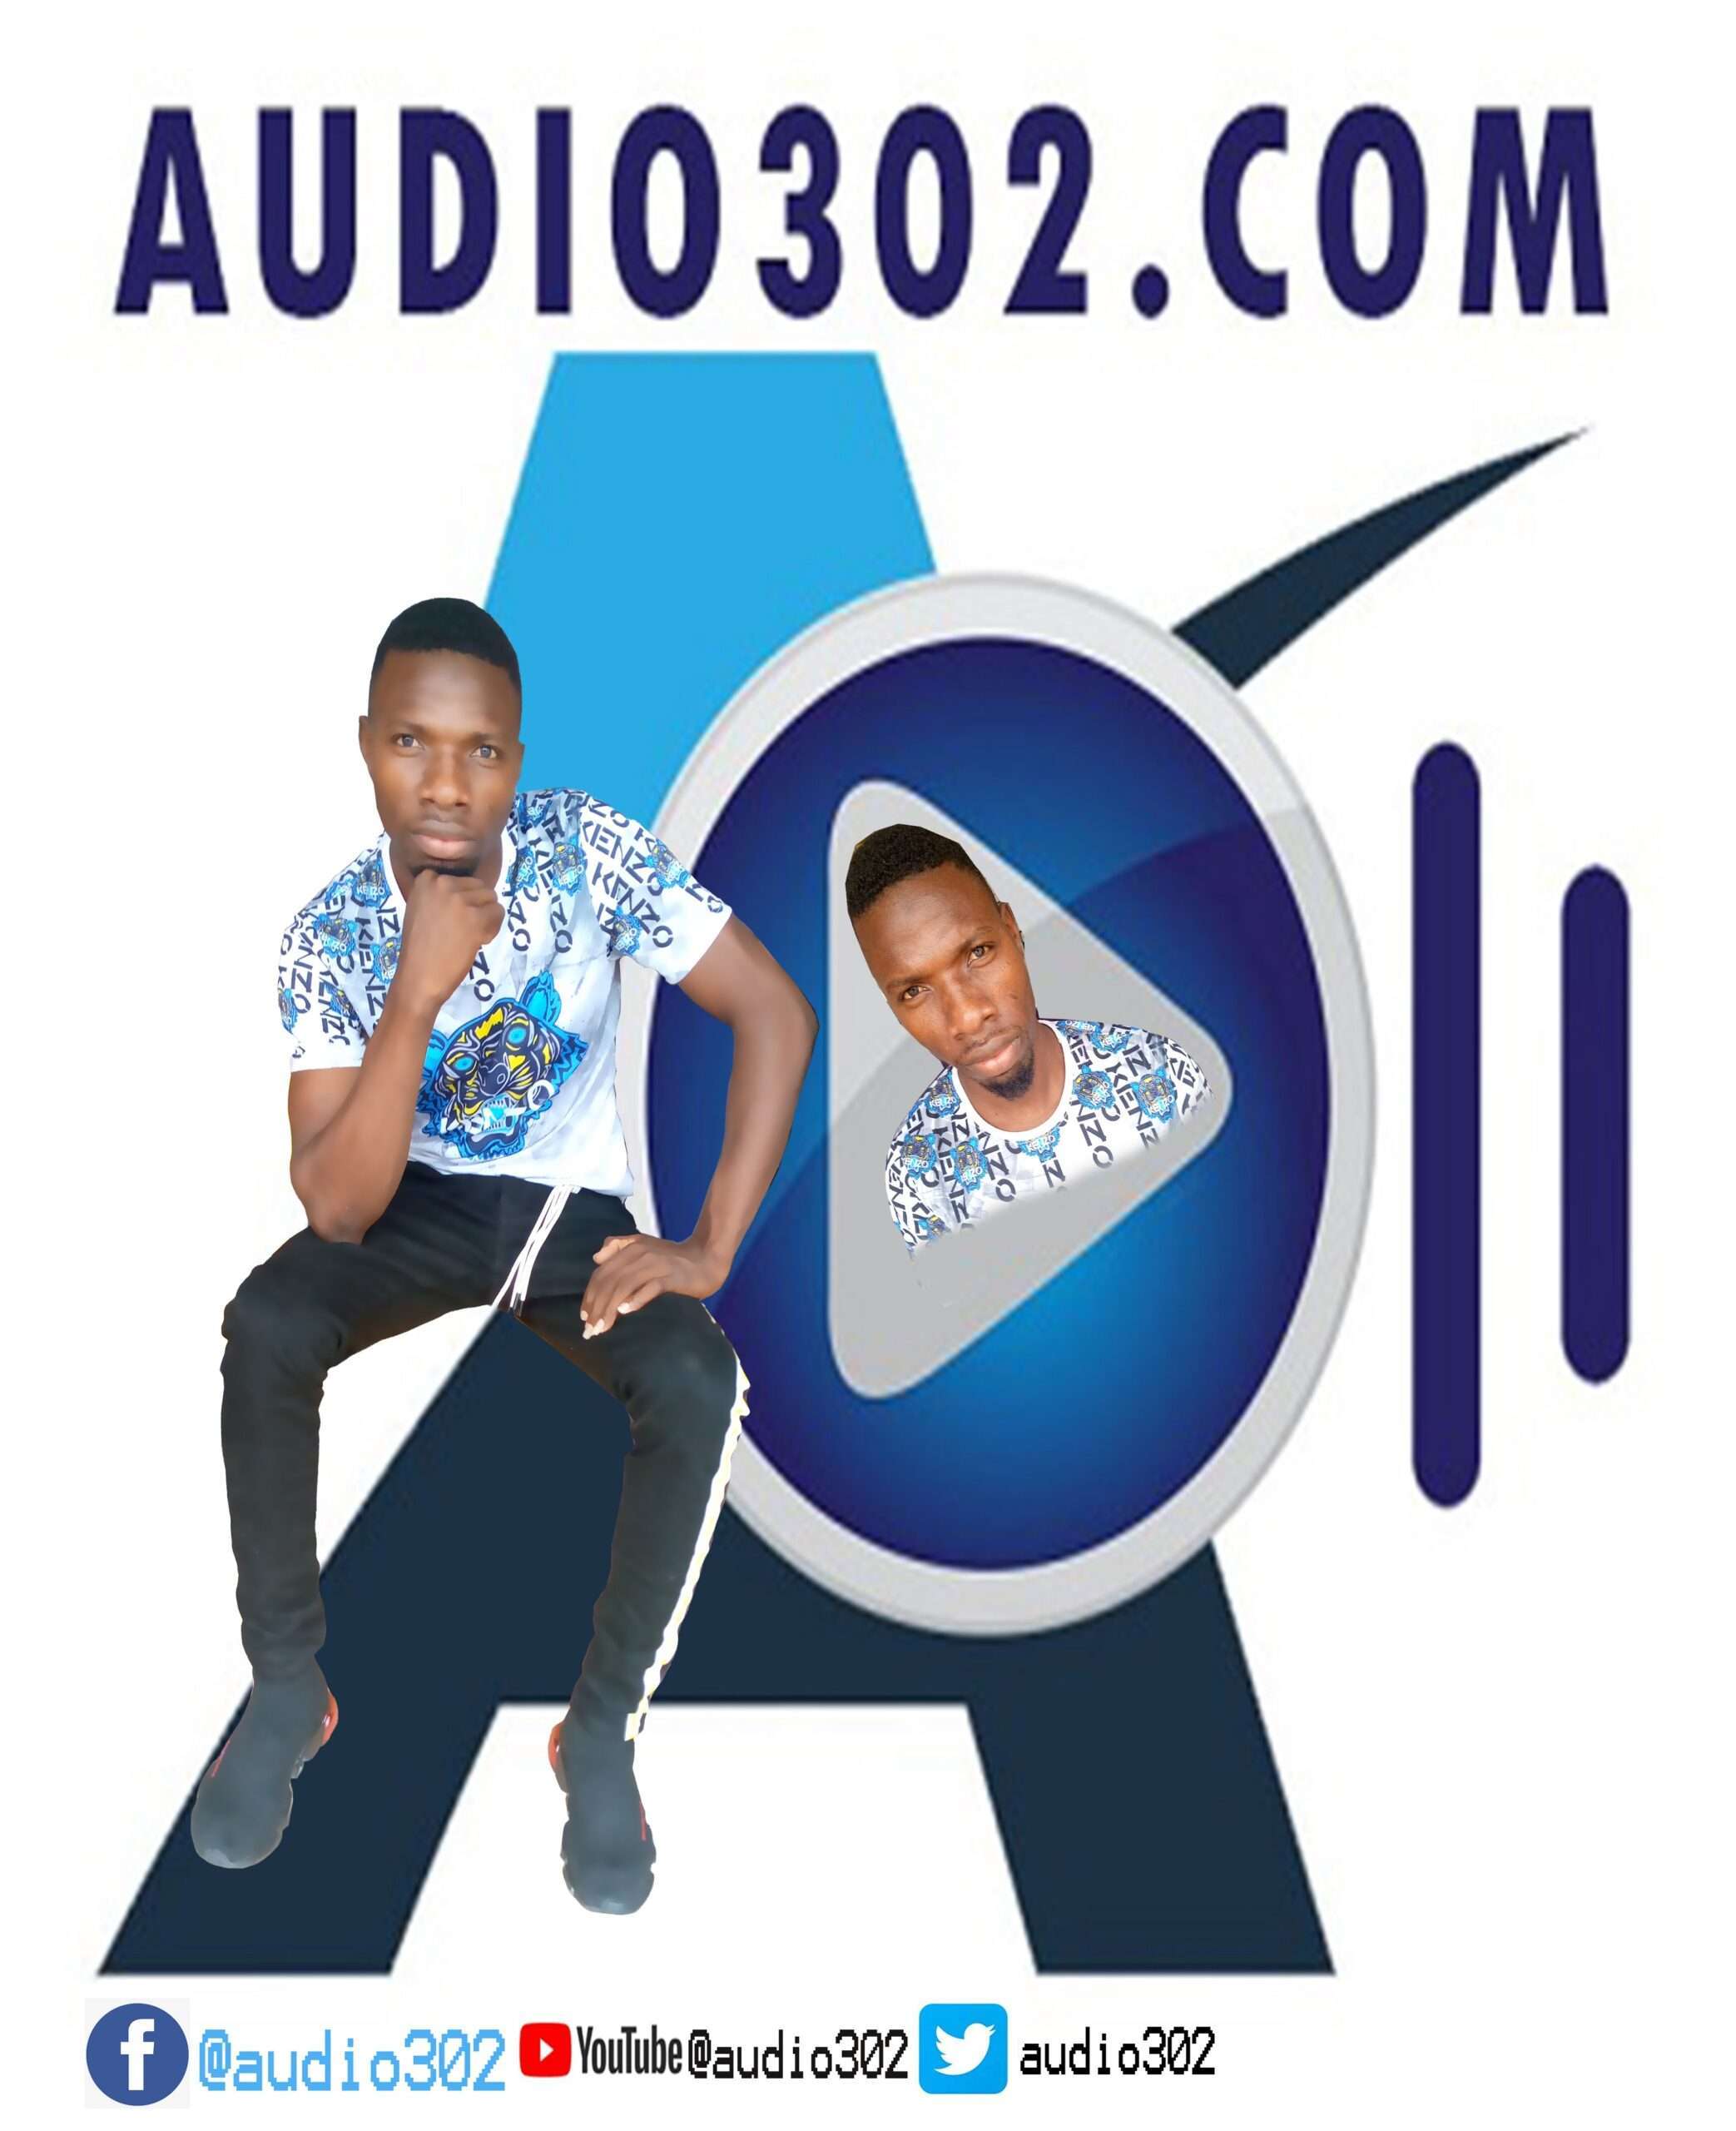 audio302 logo